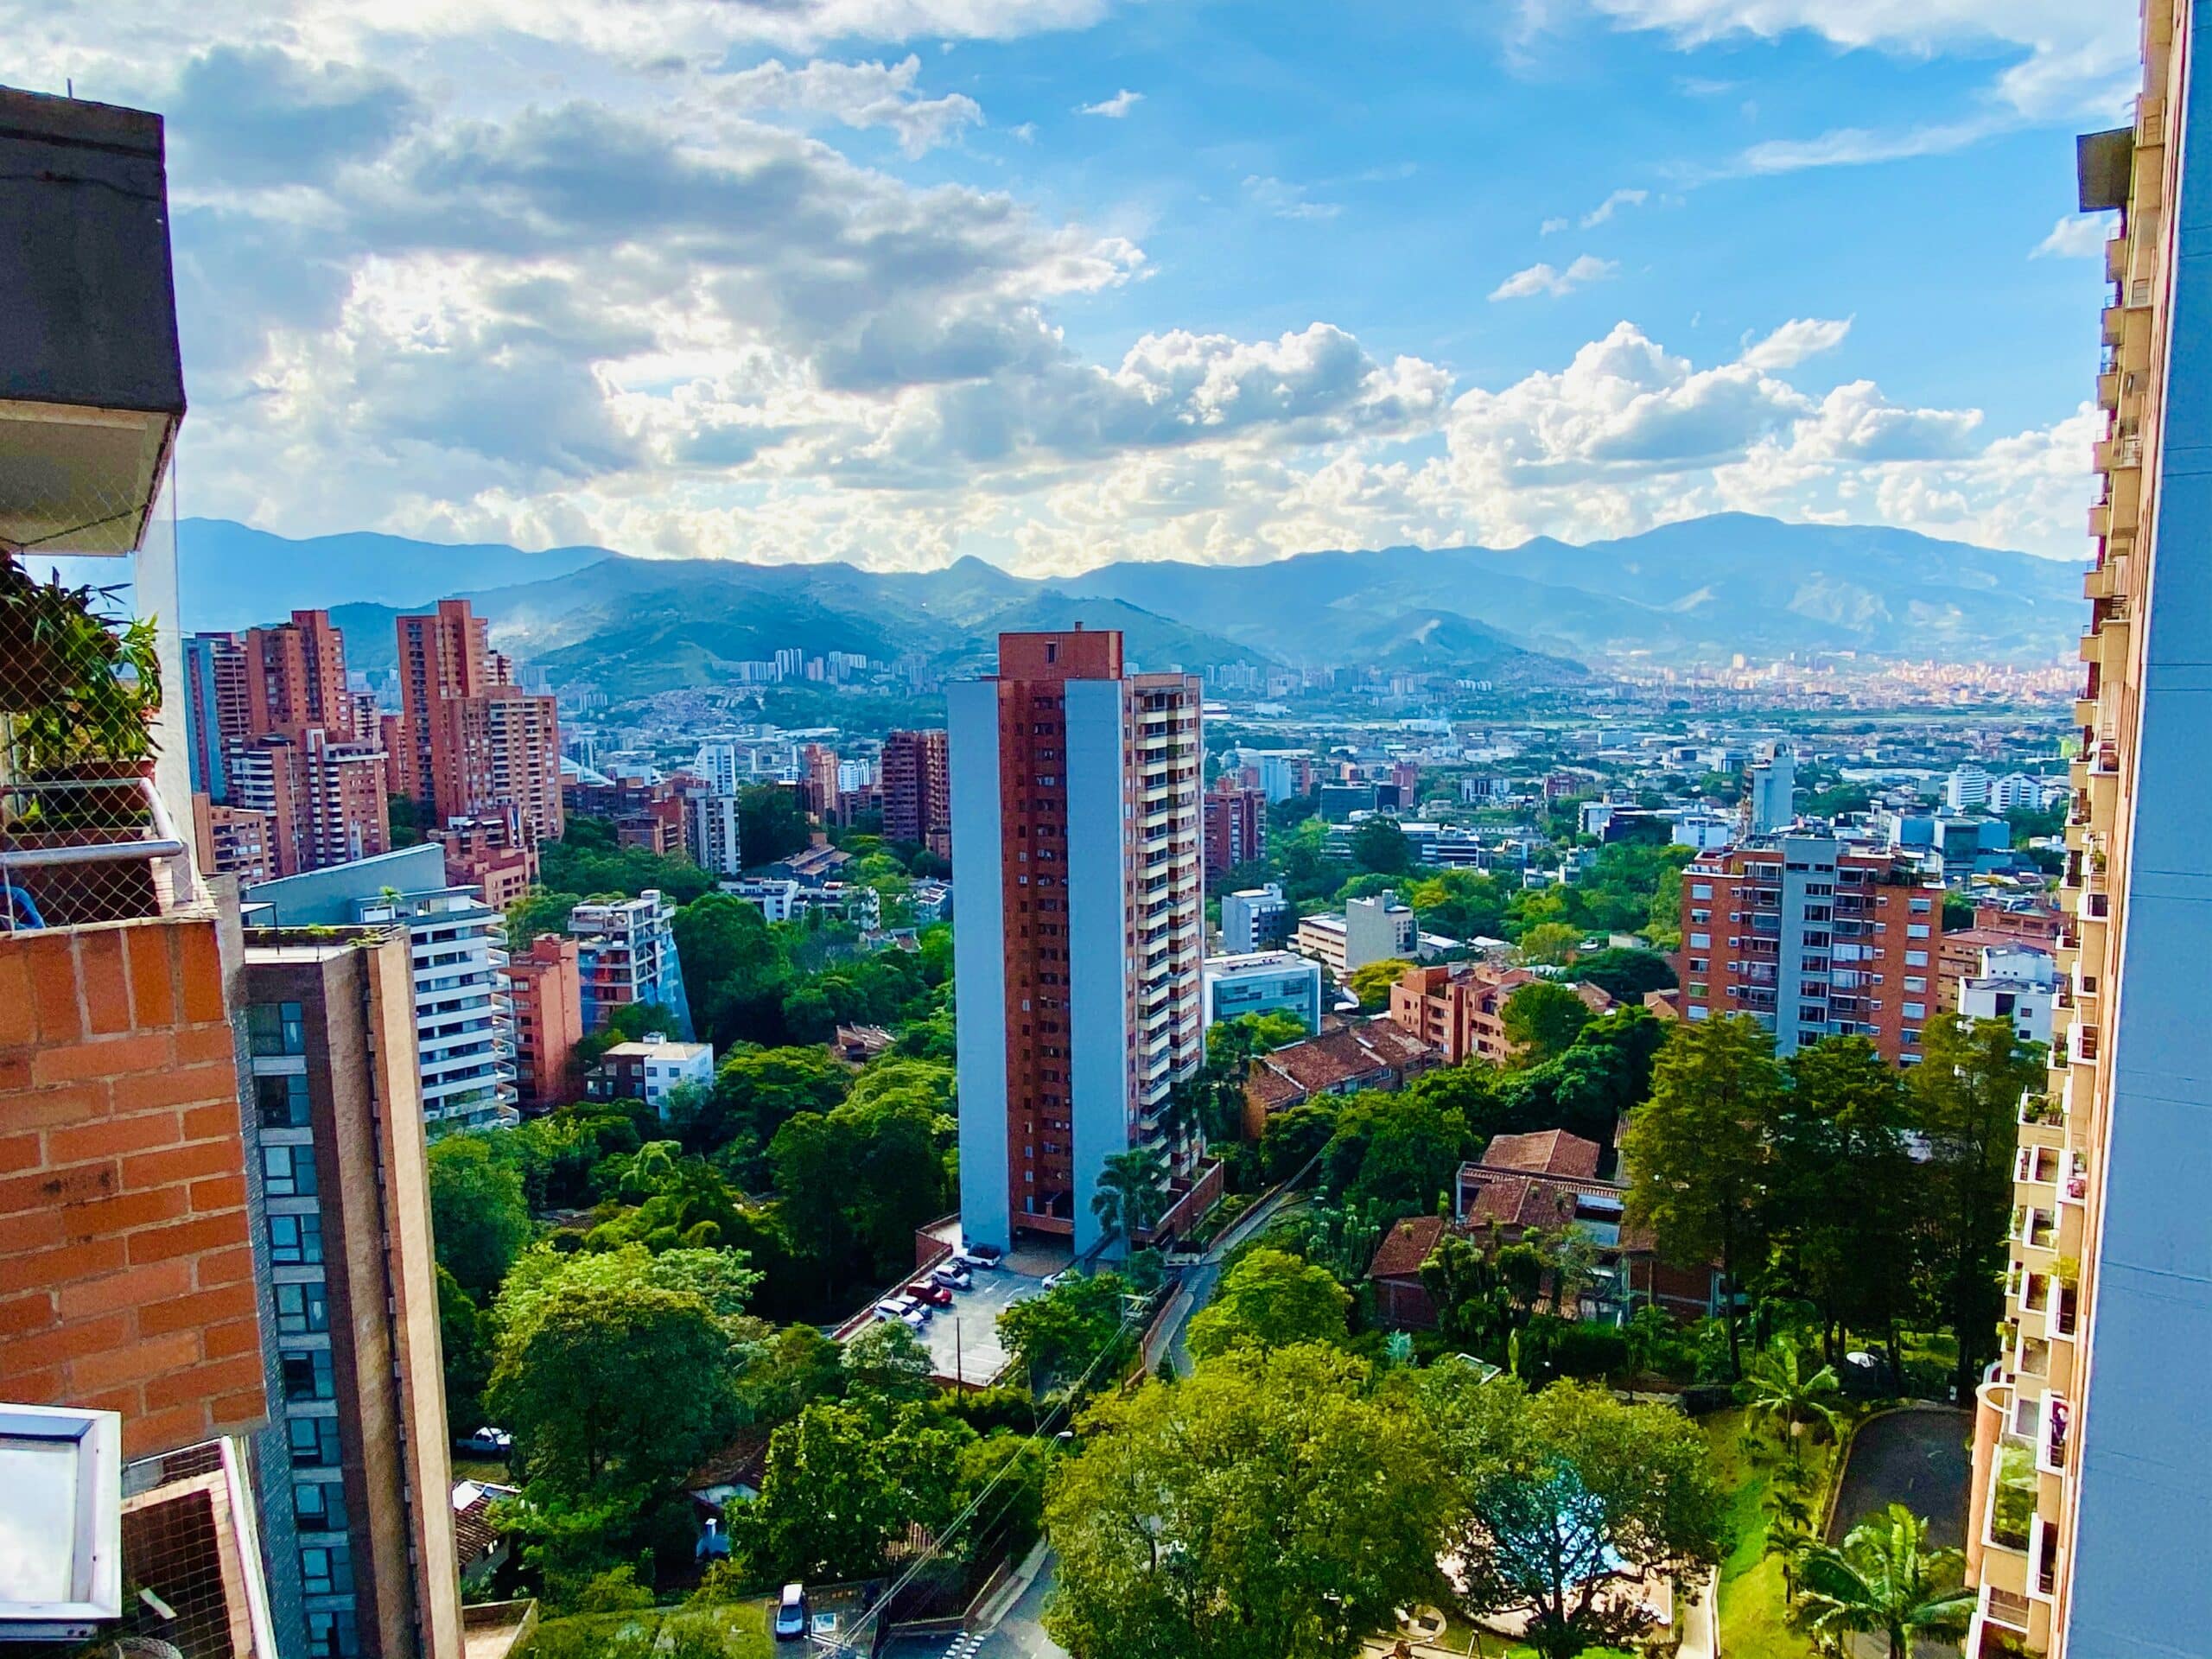 Vista dos prédios e casas em Medellín, Antioquia, Colômbia - Representa seguro viagem Medellín